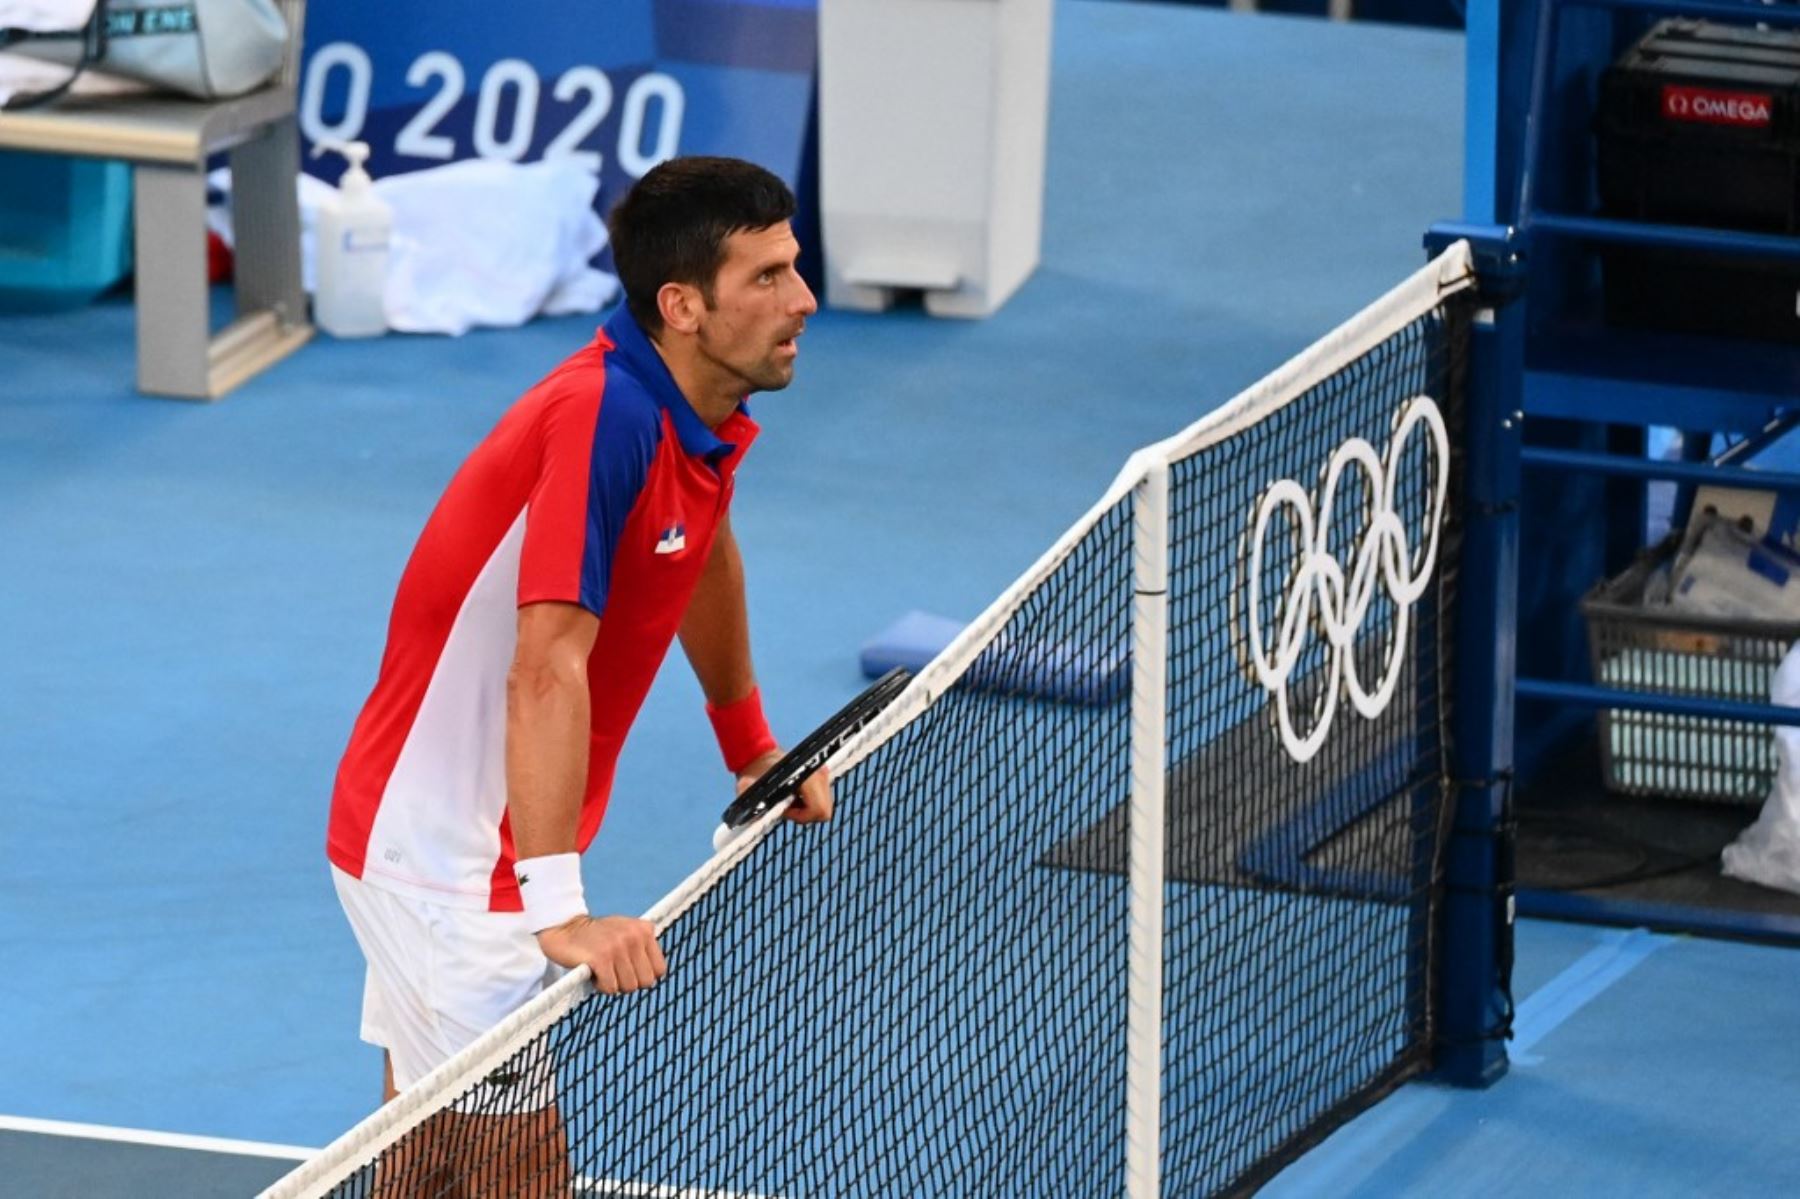 Tras perder la opción de ganar el bronce individual, Djokovic renunció a jugar por el tercer lugar en el dobles mixto